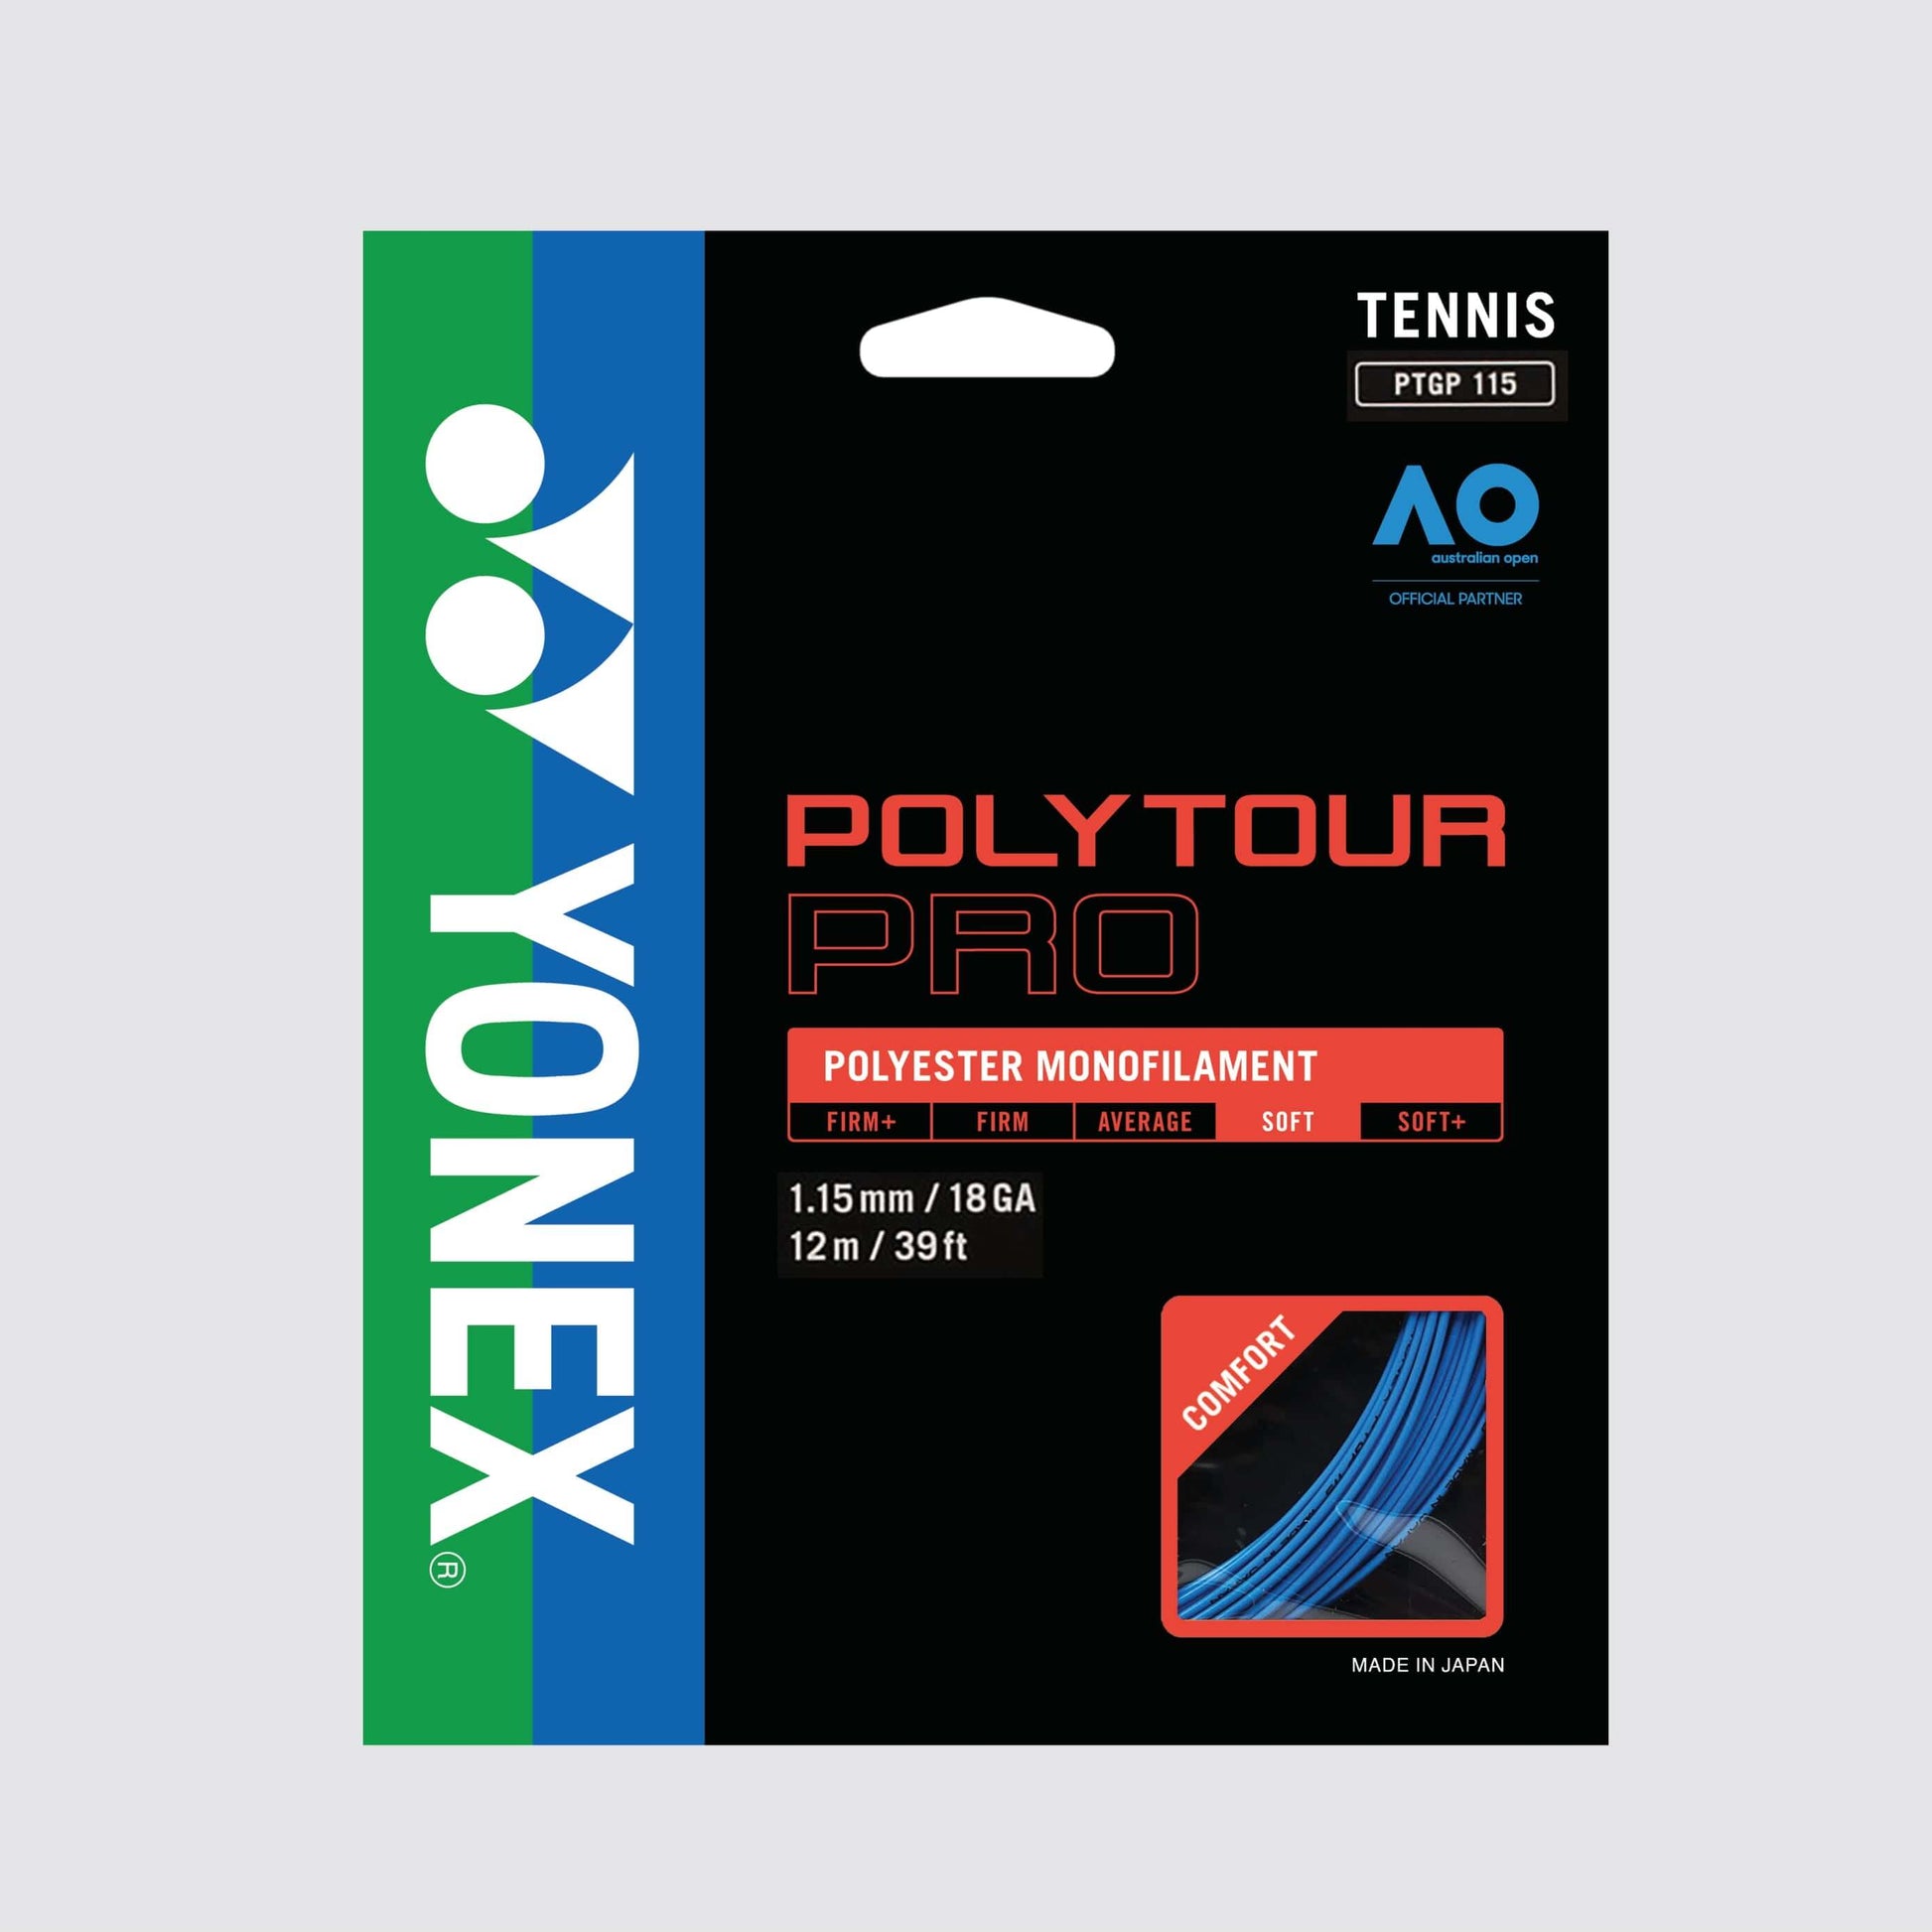 Yonex Polytour Pro 115 / 18 Tennis String